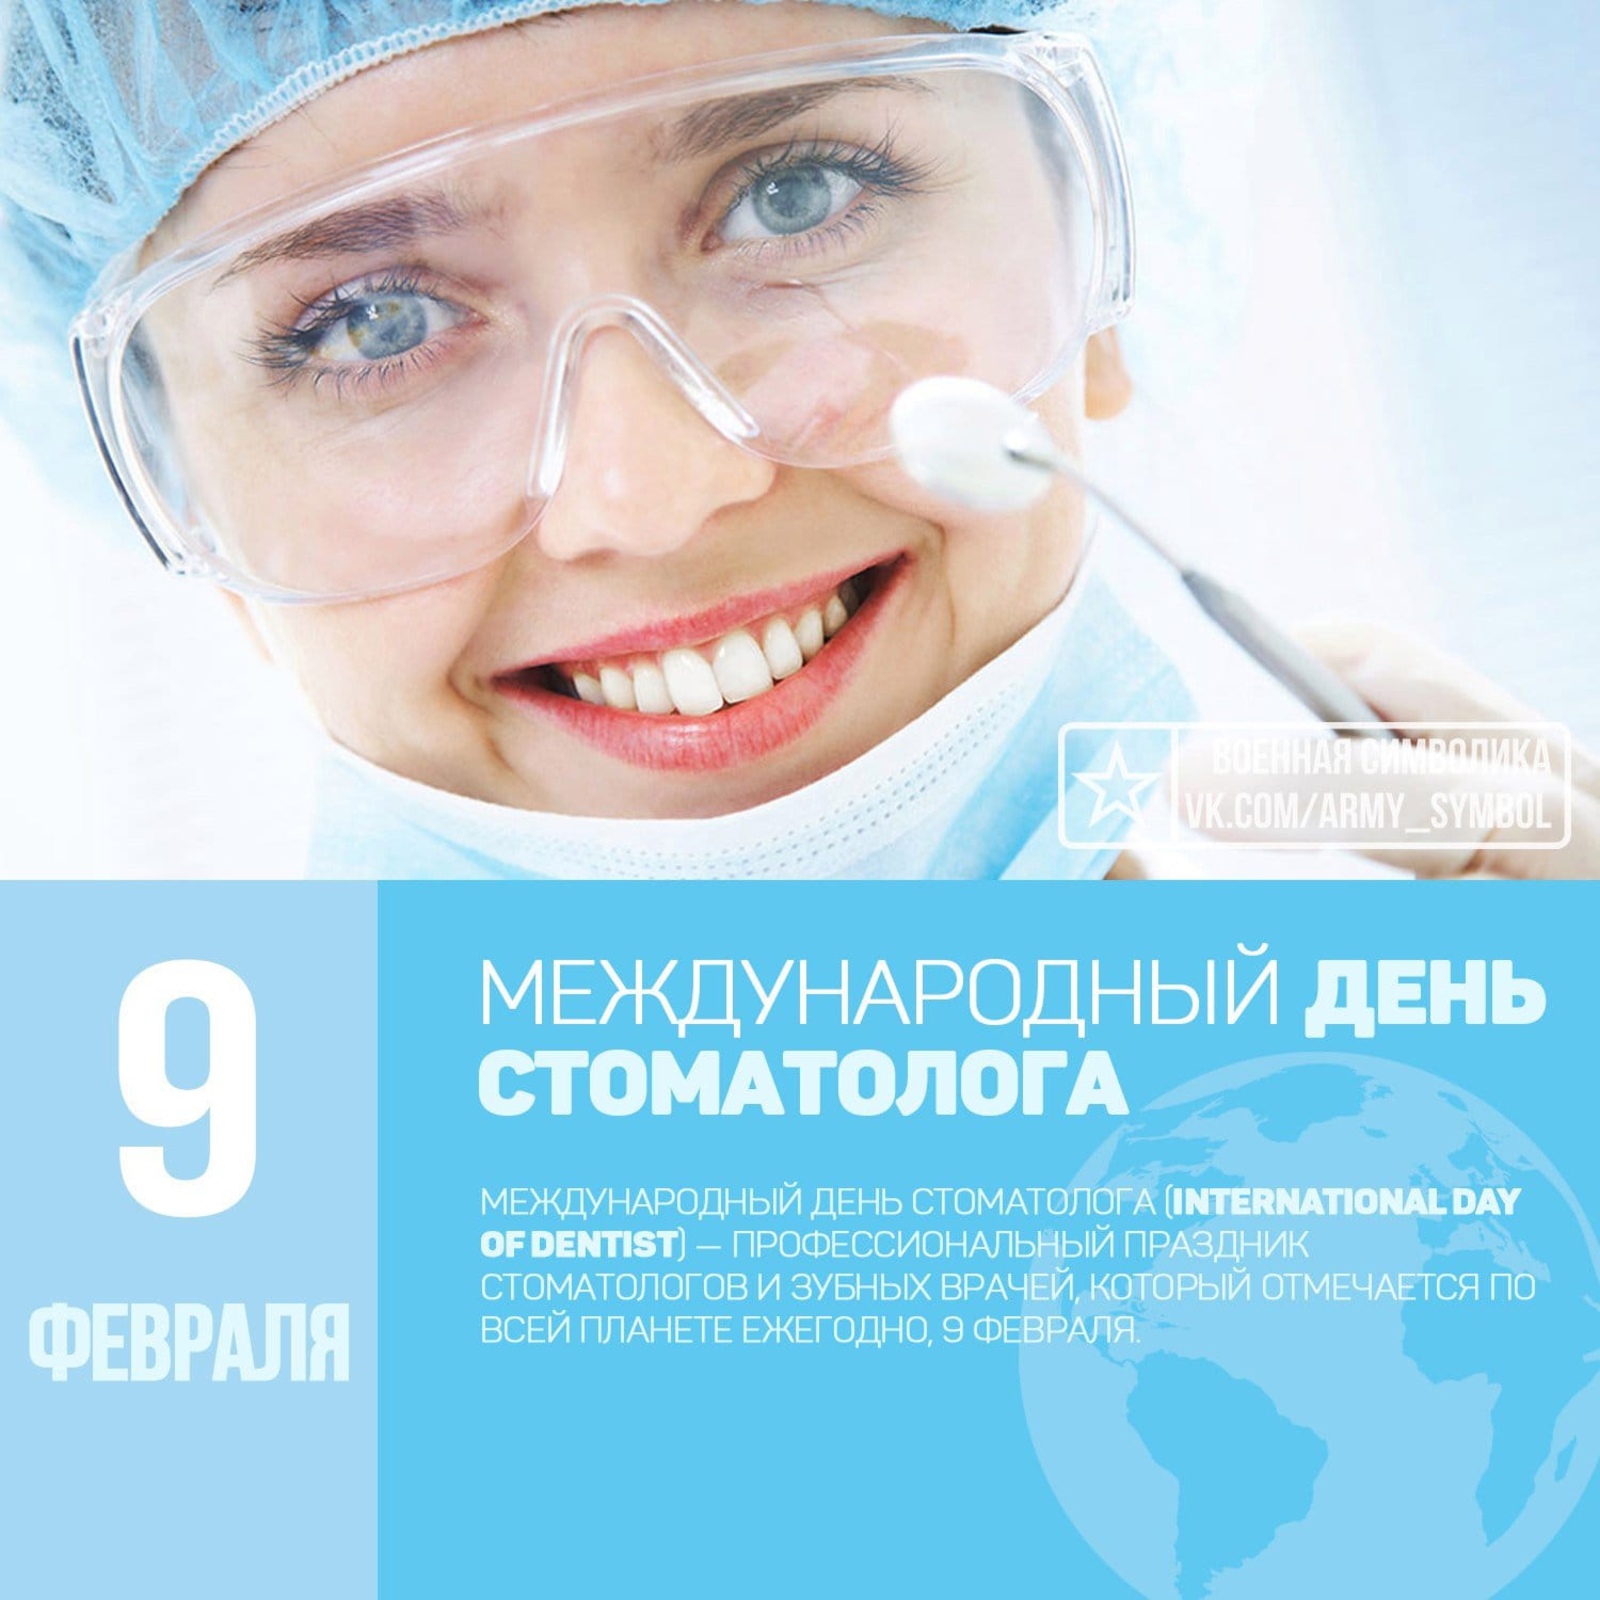 Администрация Толбазинской ЦРБ поздравляет коллег стоматологов!